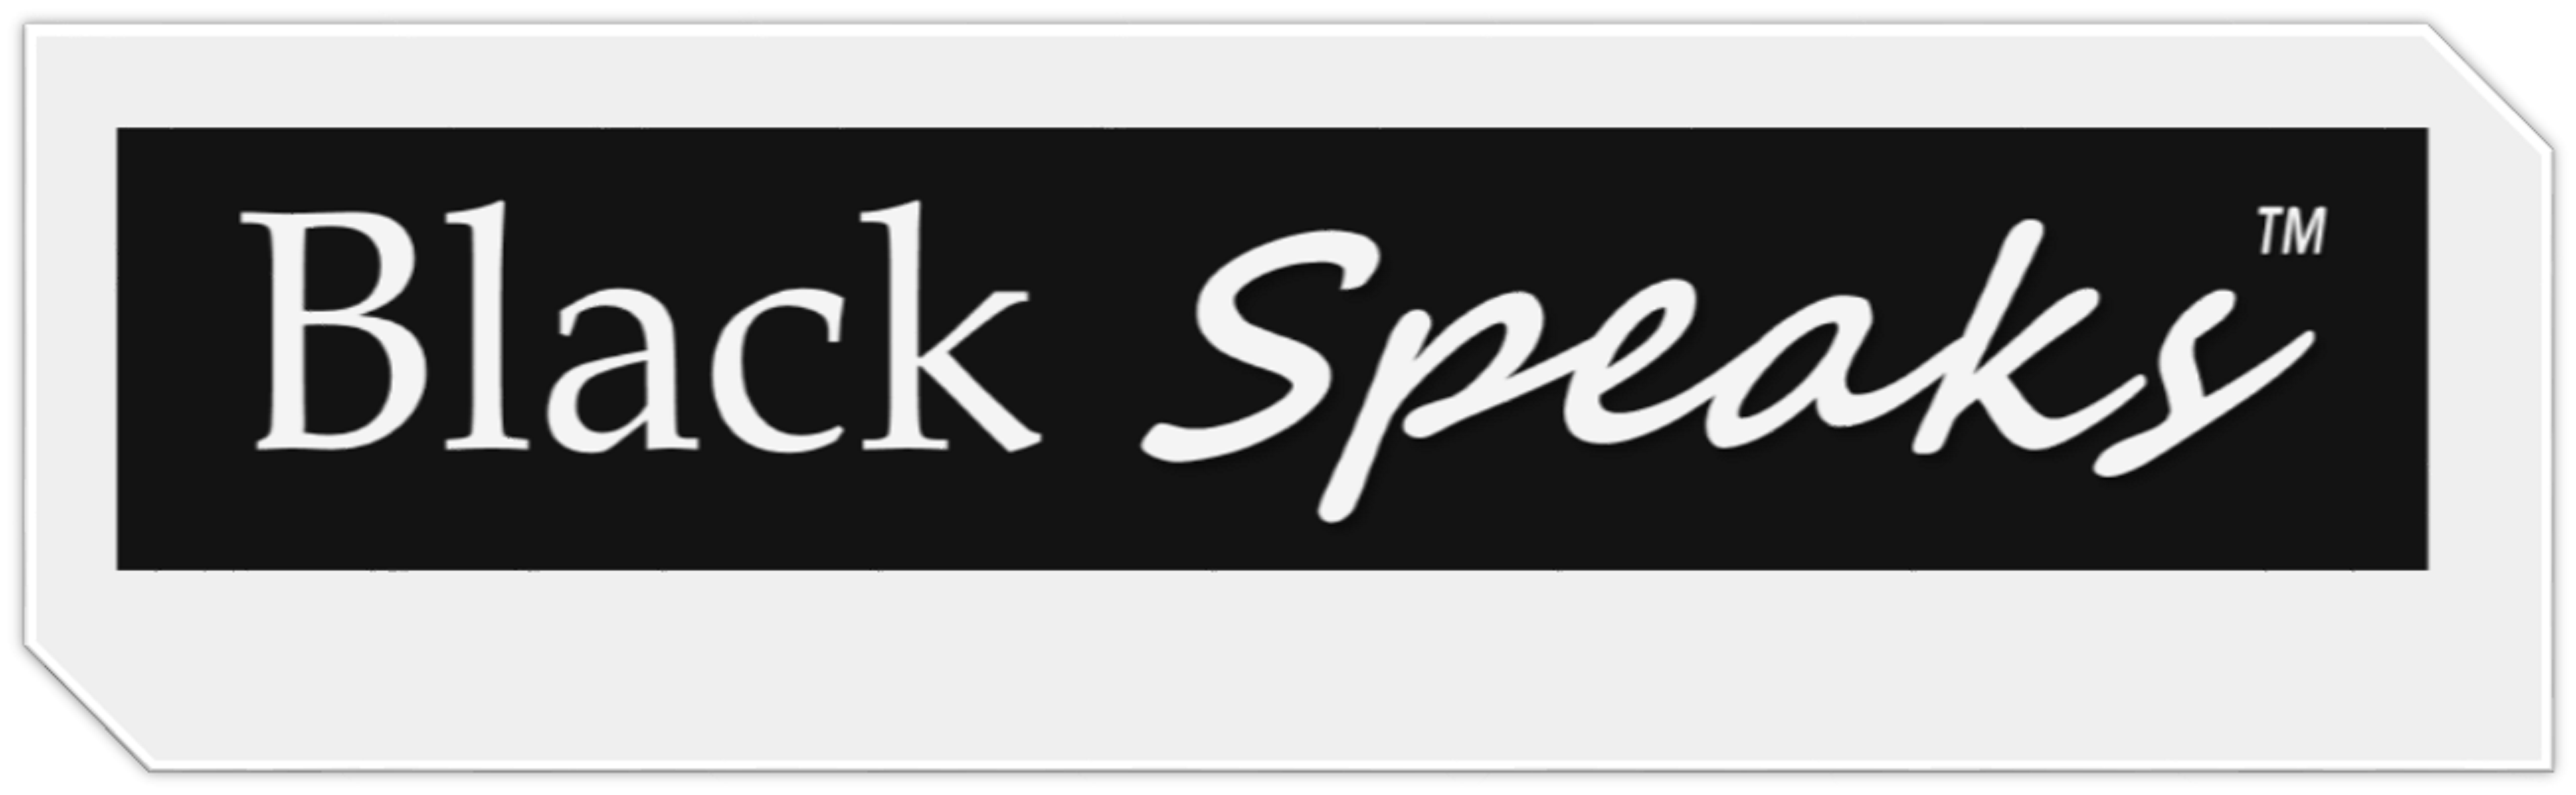 PharmPsych.com Spawns BlackSpeaks.com, Growing Family Of Spinoffs